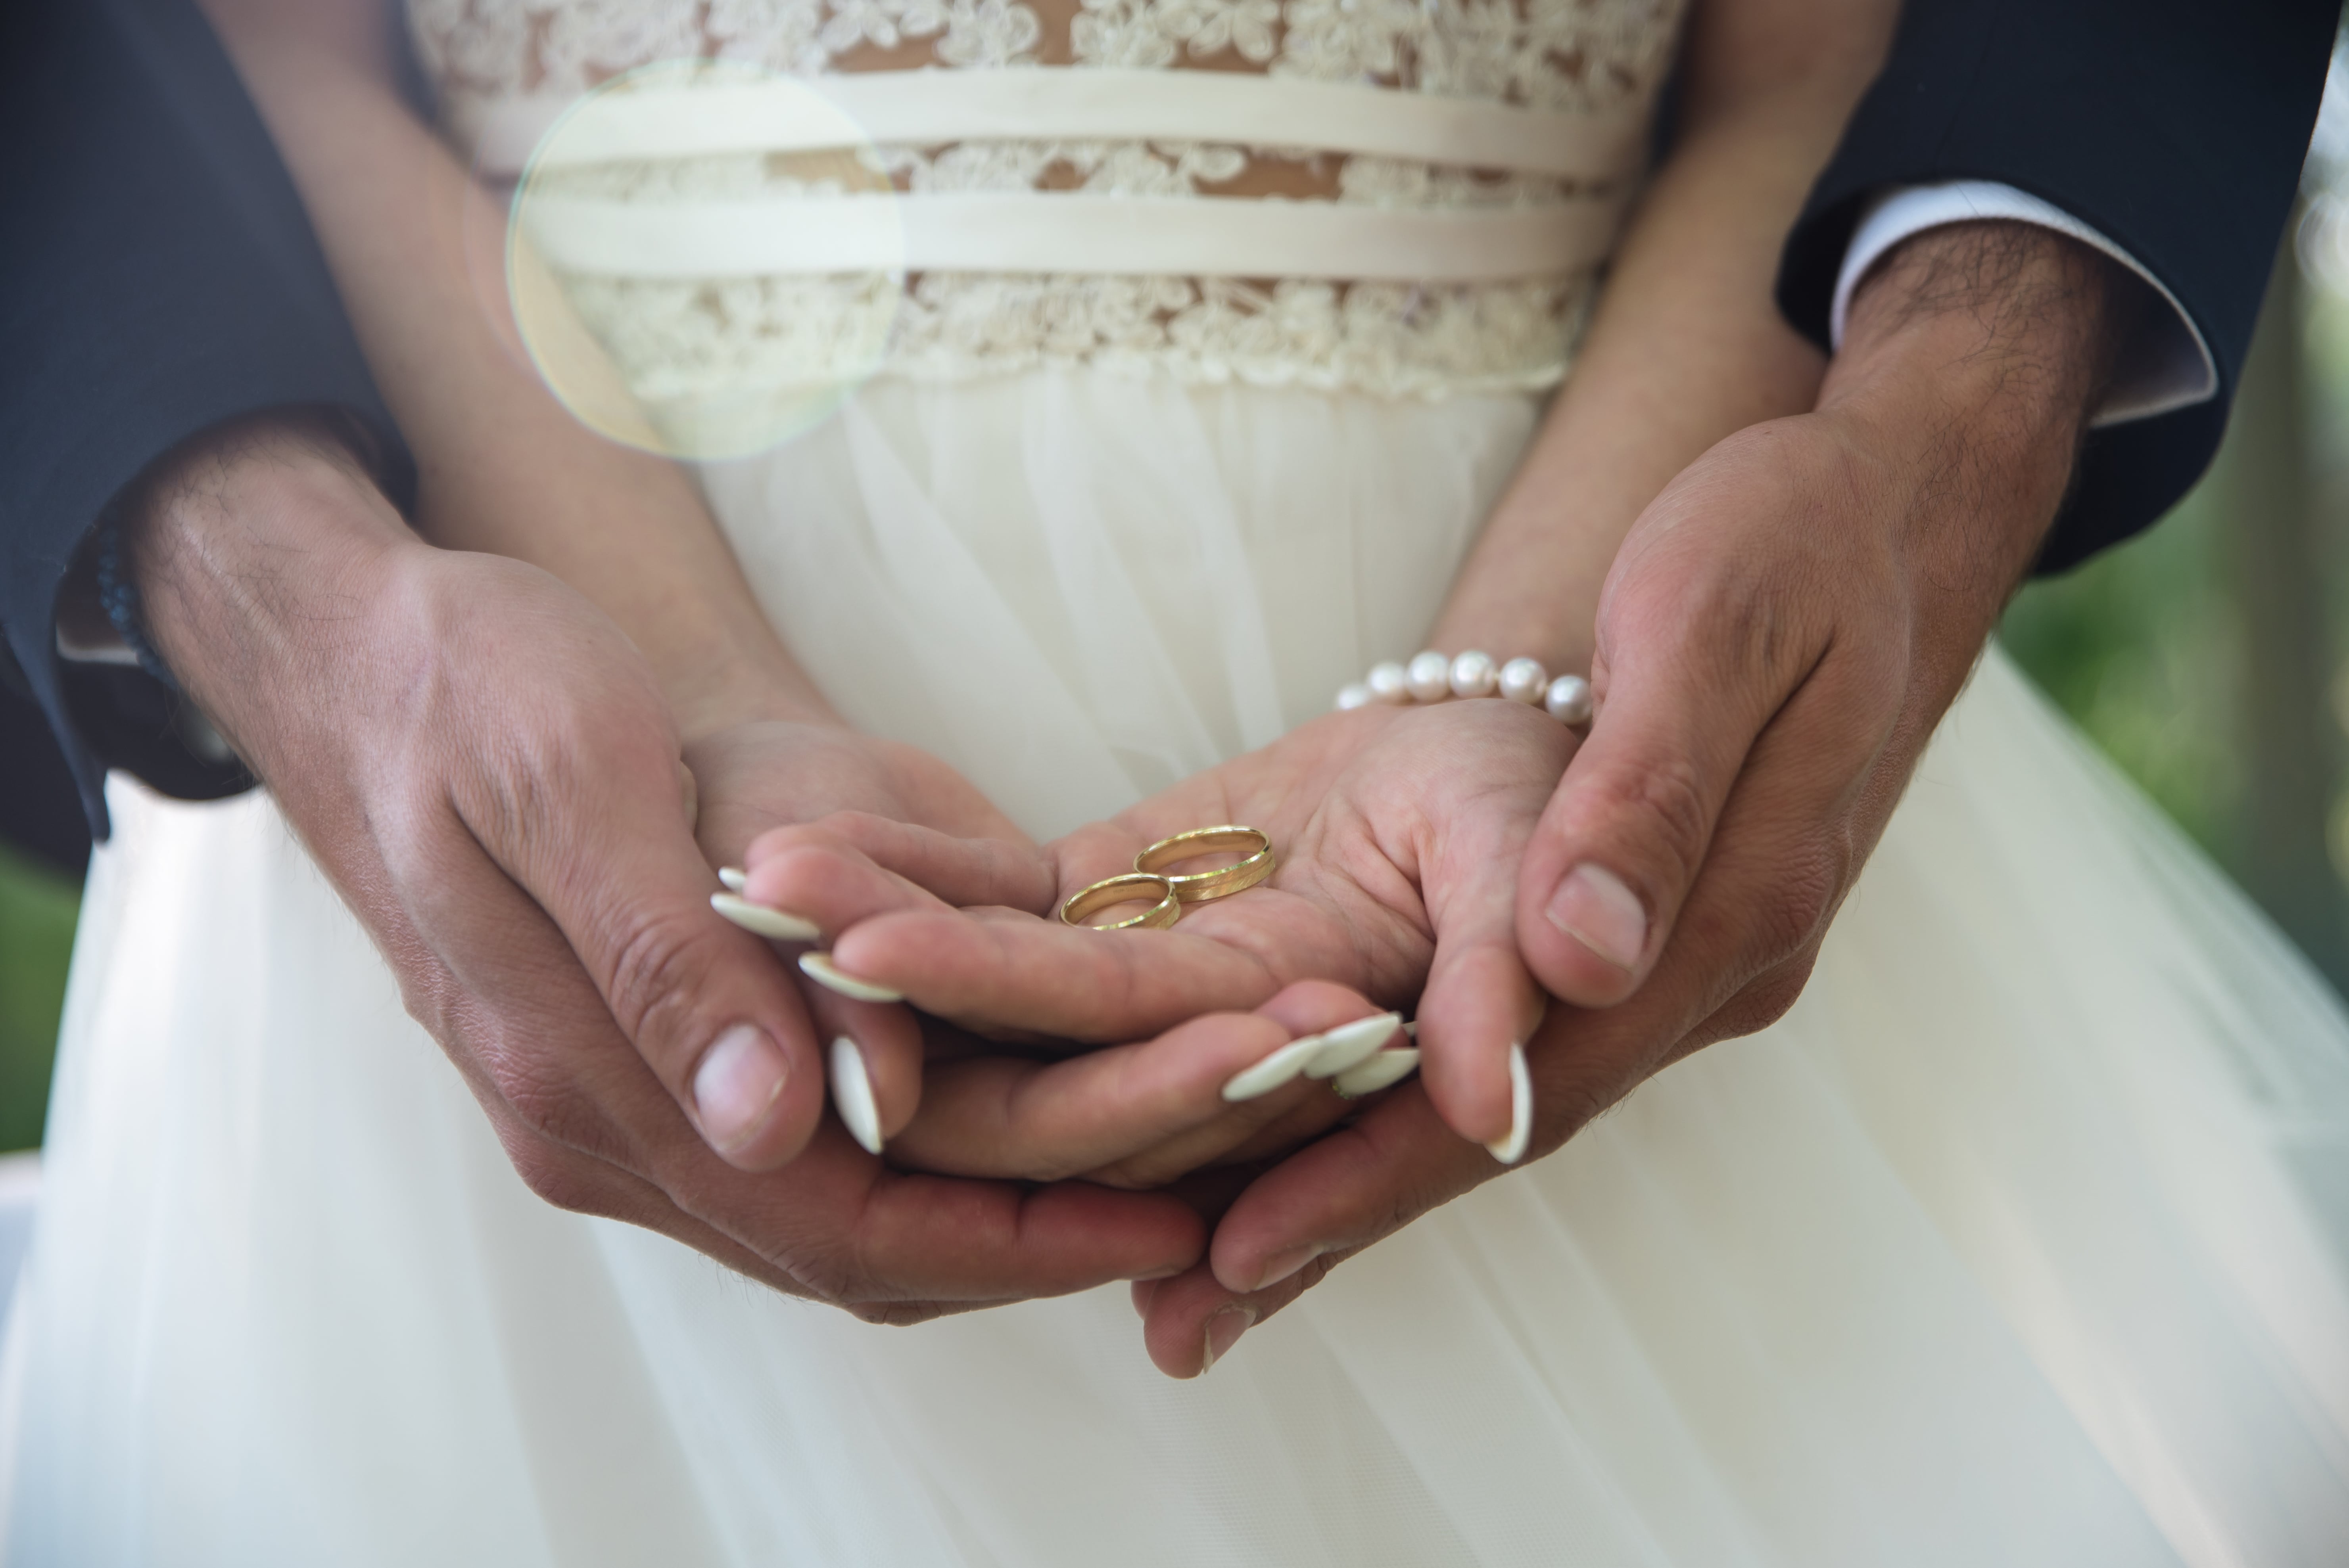 Брачная неделя. Брак. Обручальные кольца на руках жениха и невесты. Свадьба руки с кольцами. Фото обручальных колец на руках жениха и невесты.